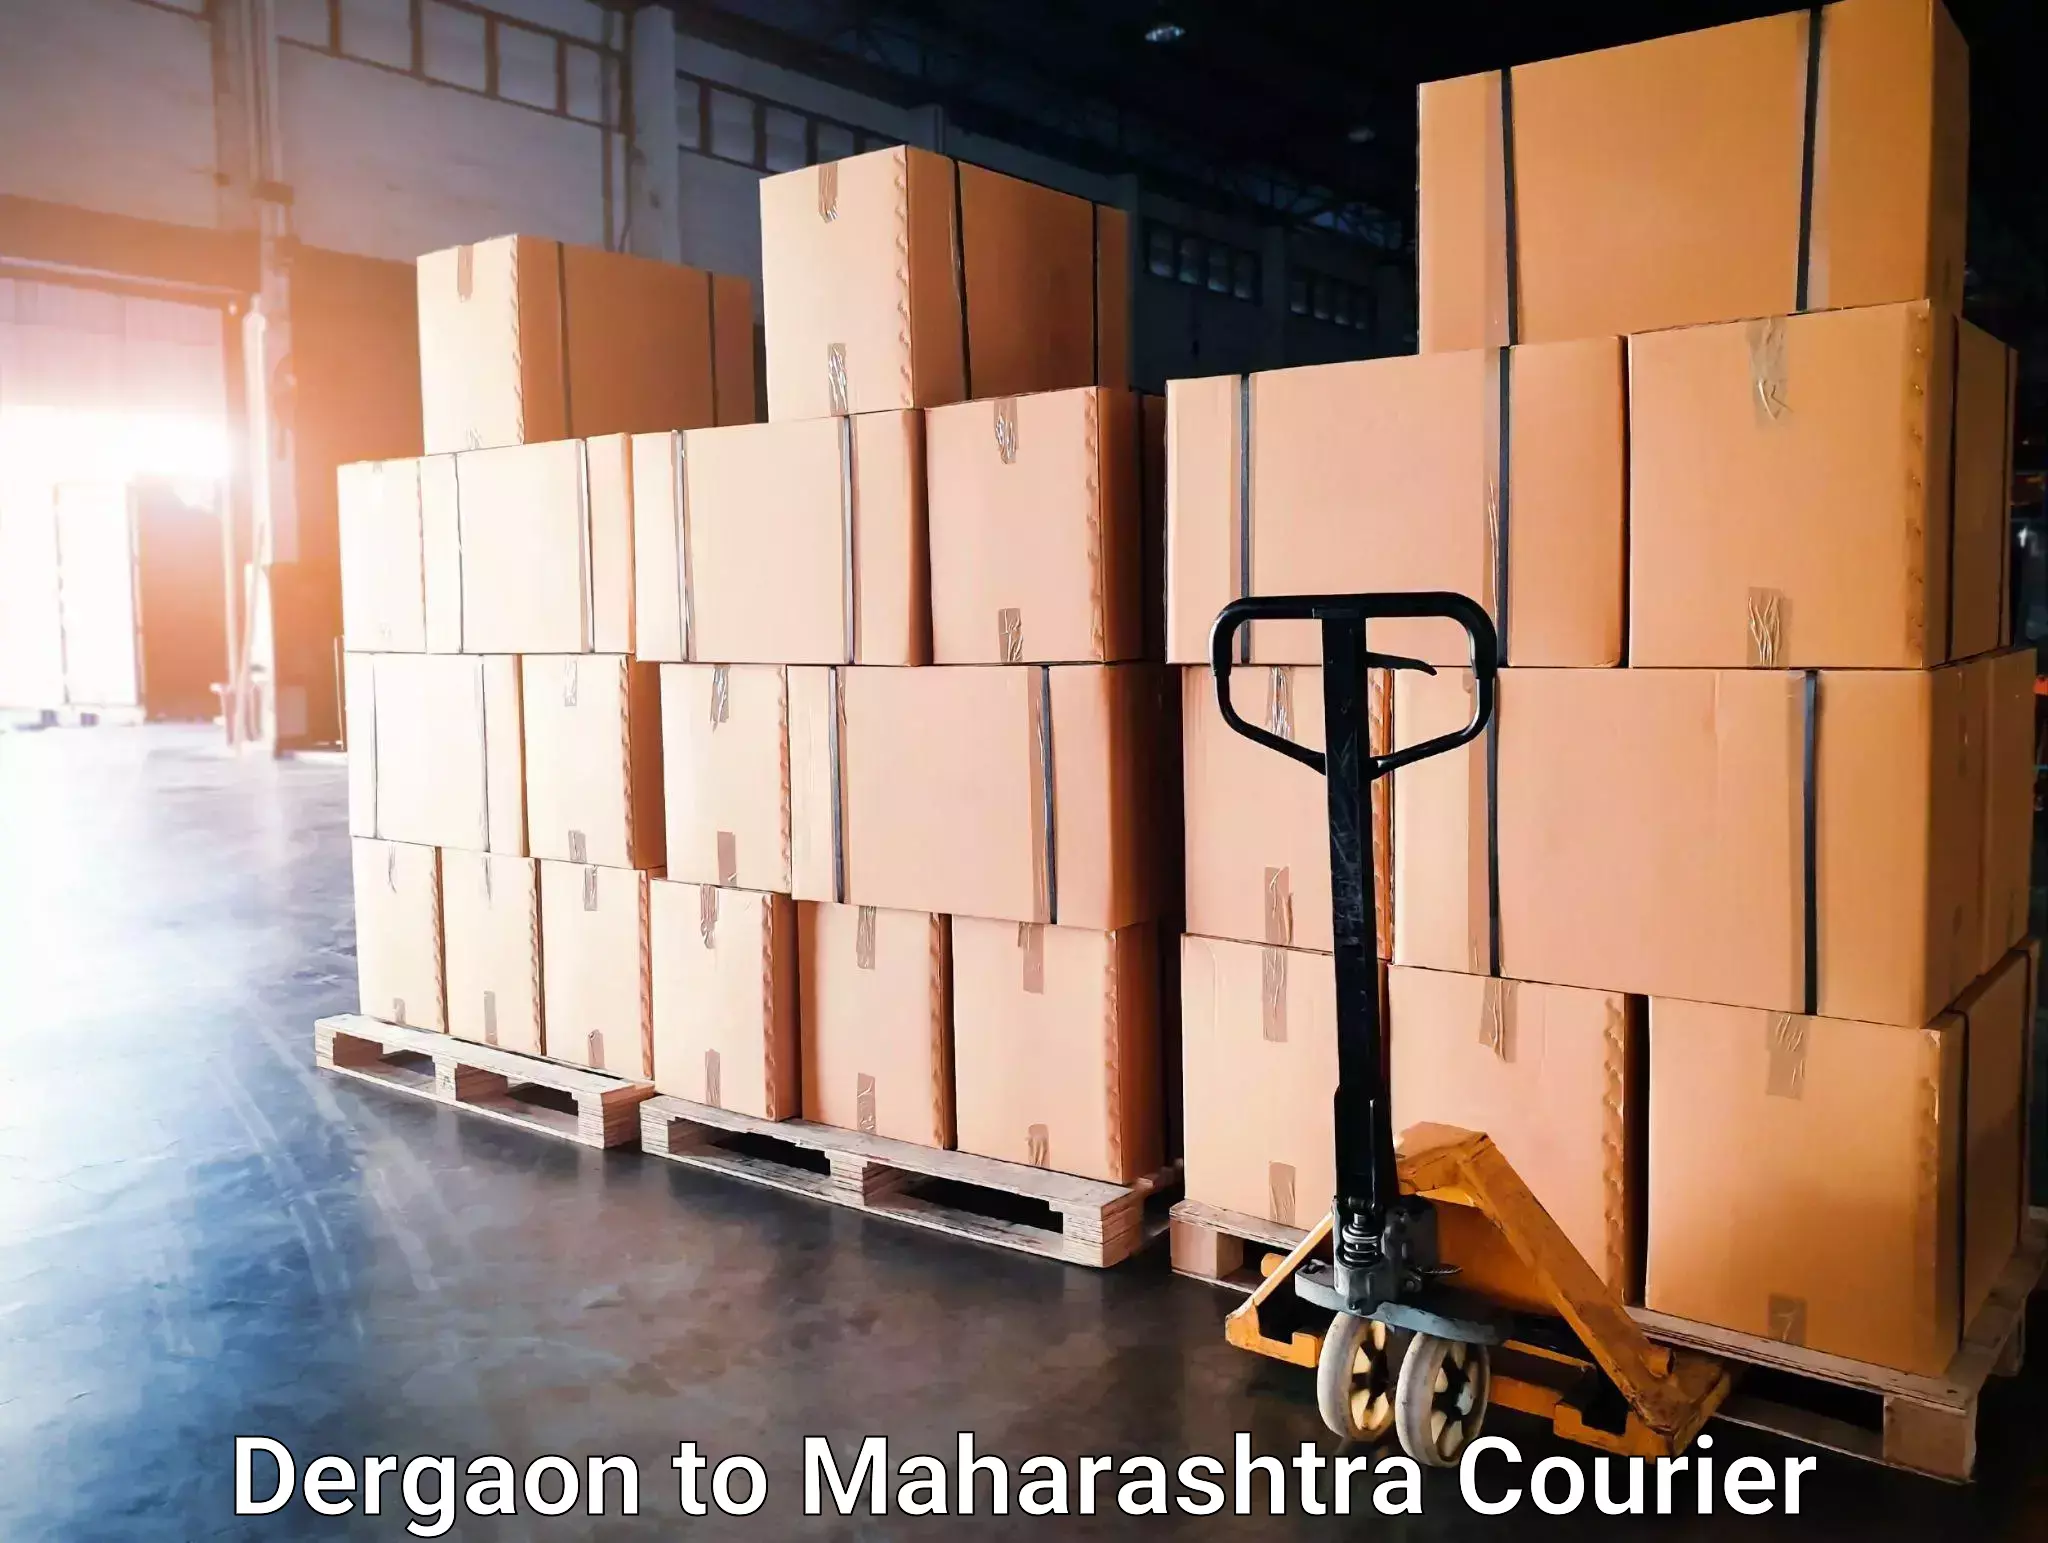 Speedy delivery service Dergaon to Sakri